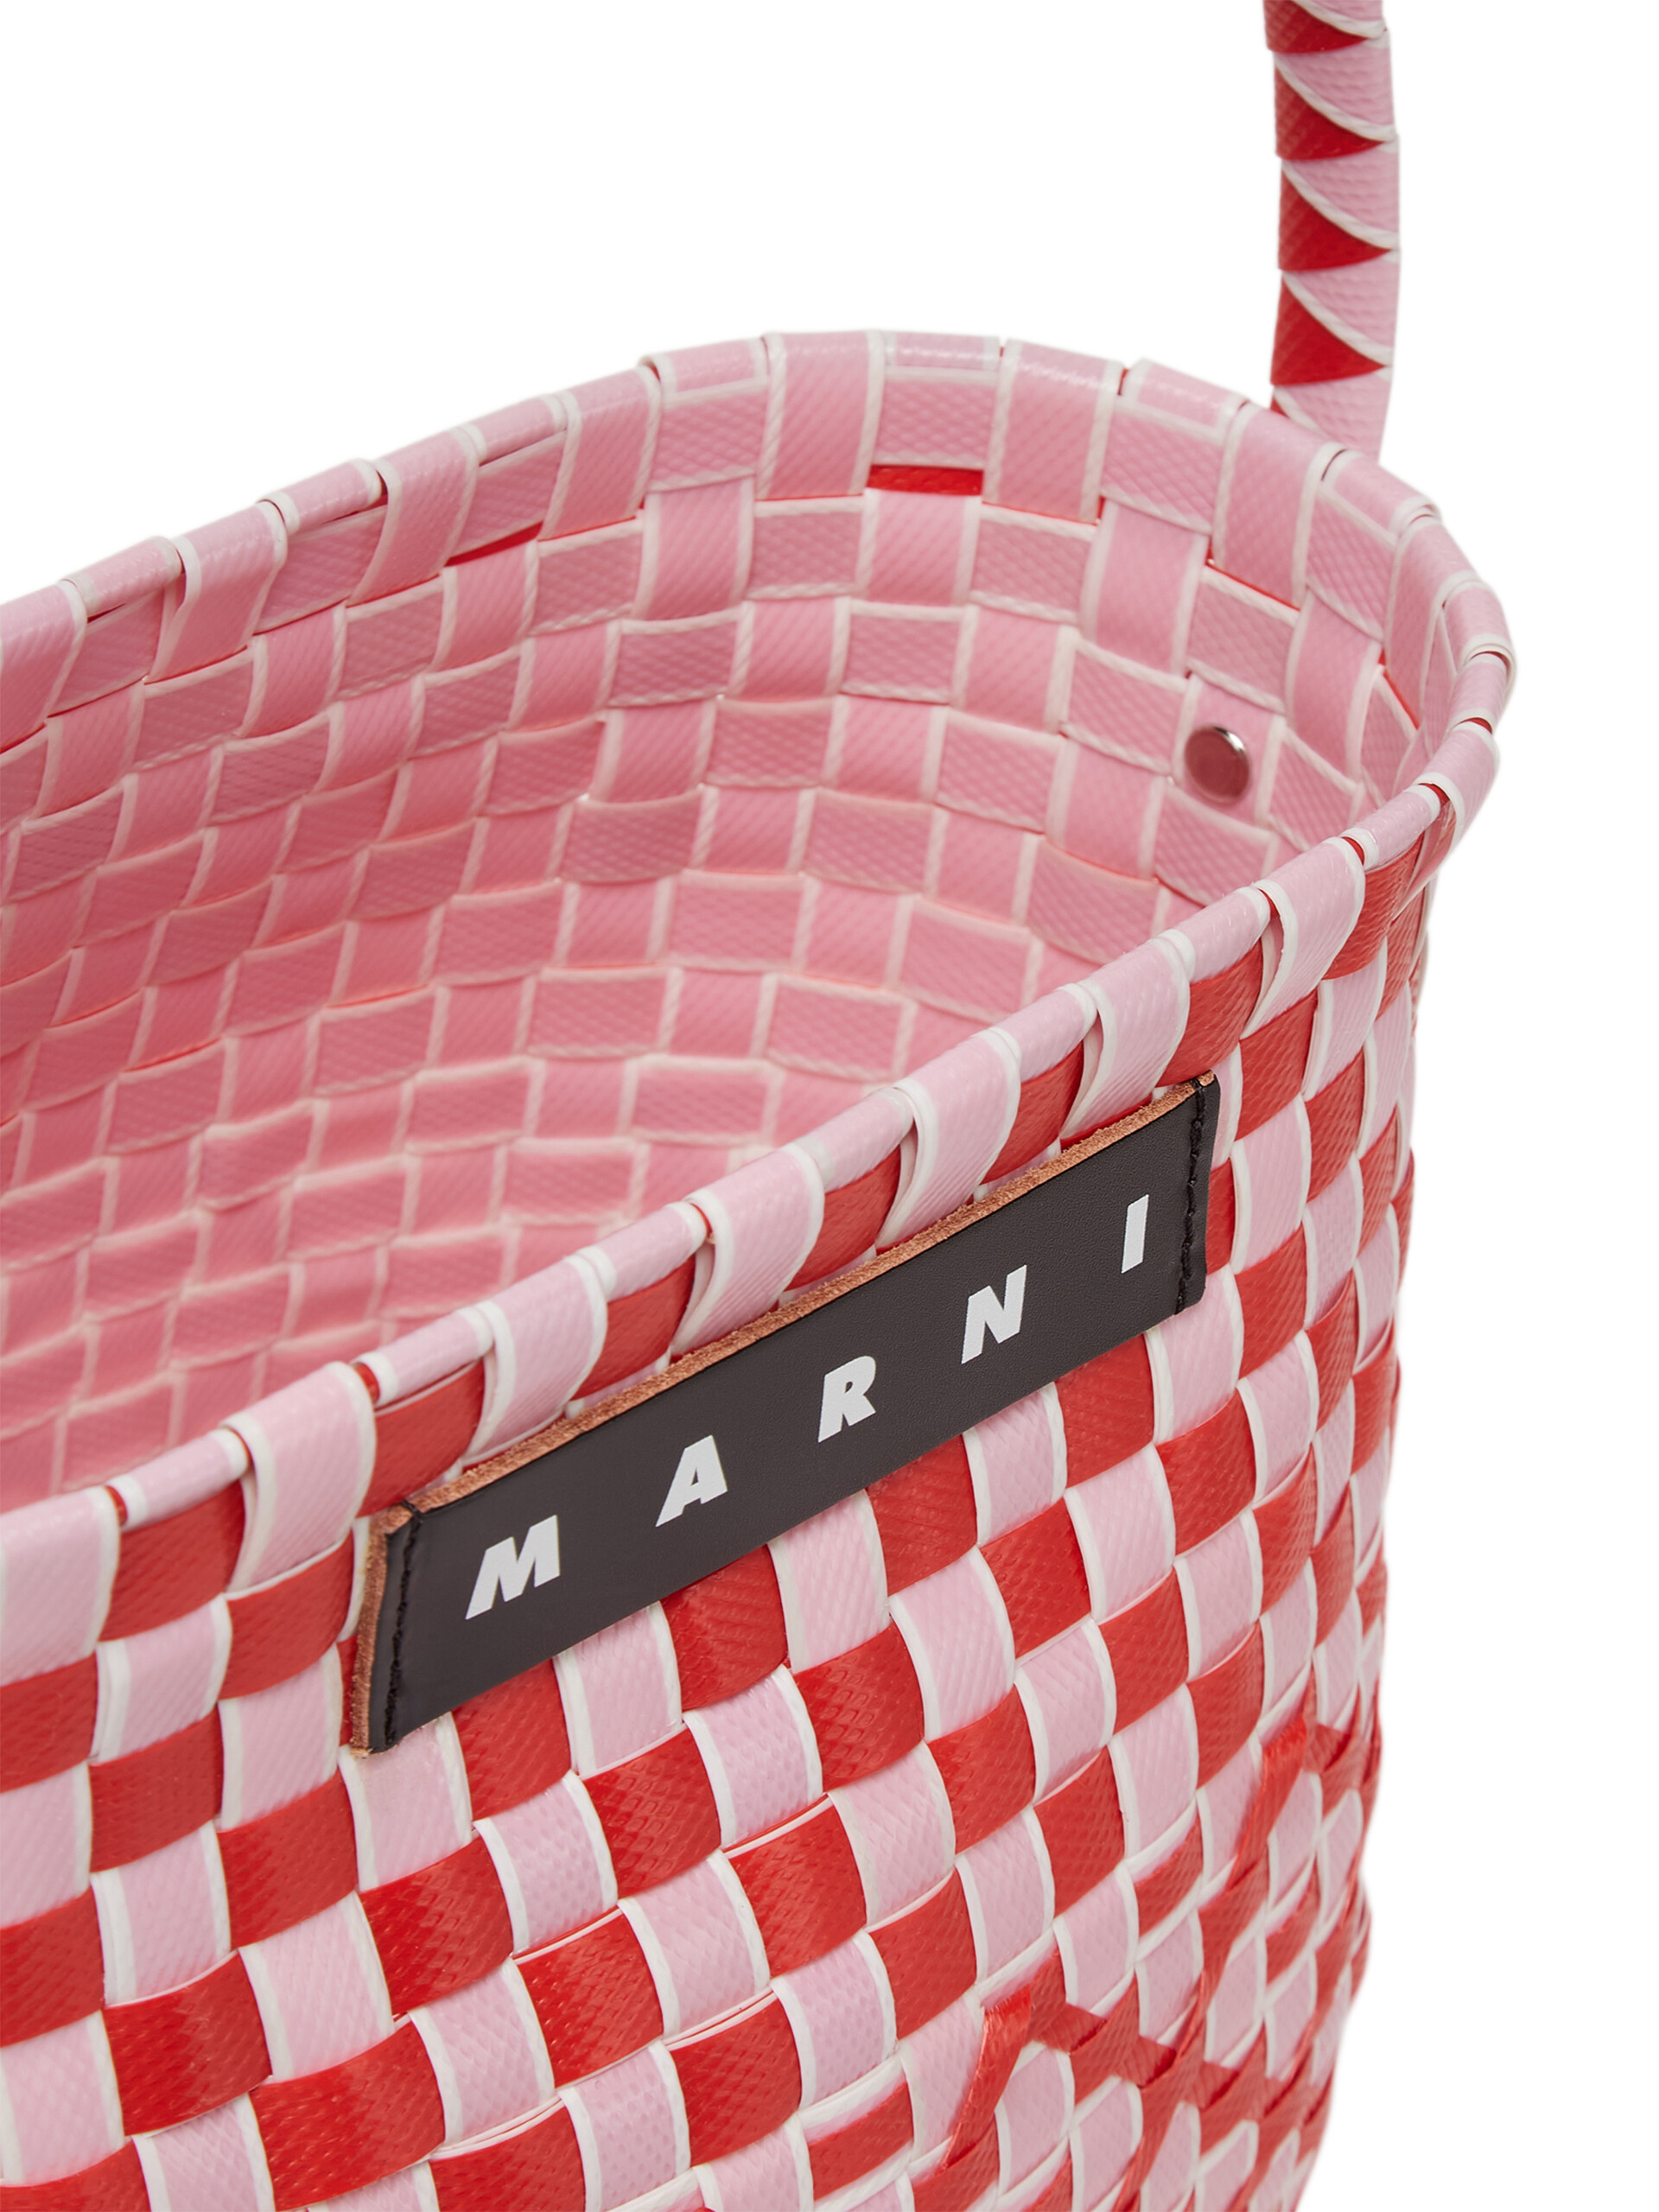 Secchiello MARNI MARKET POD in polipropilene intrecciato rosa e rosso - Borse - Image 4